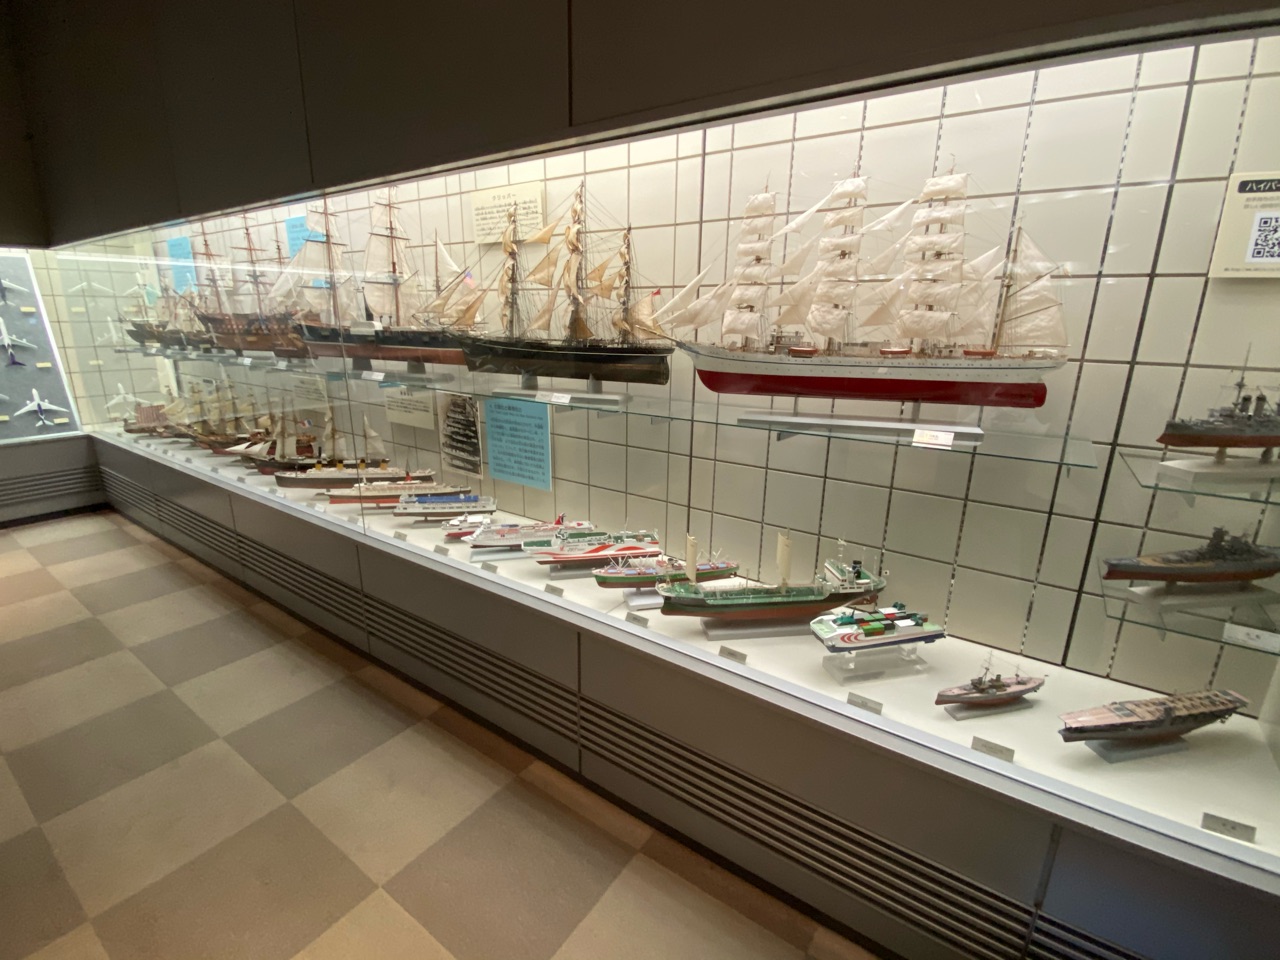 ヌマジ交通ミュージアム(広島市交通科学館)の船模型展示